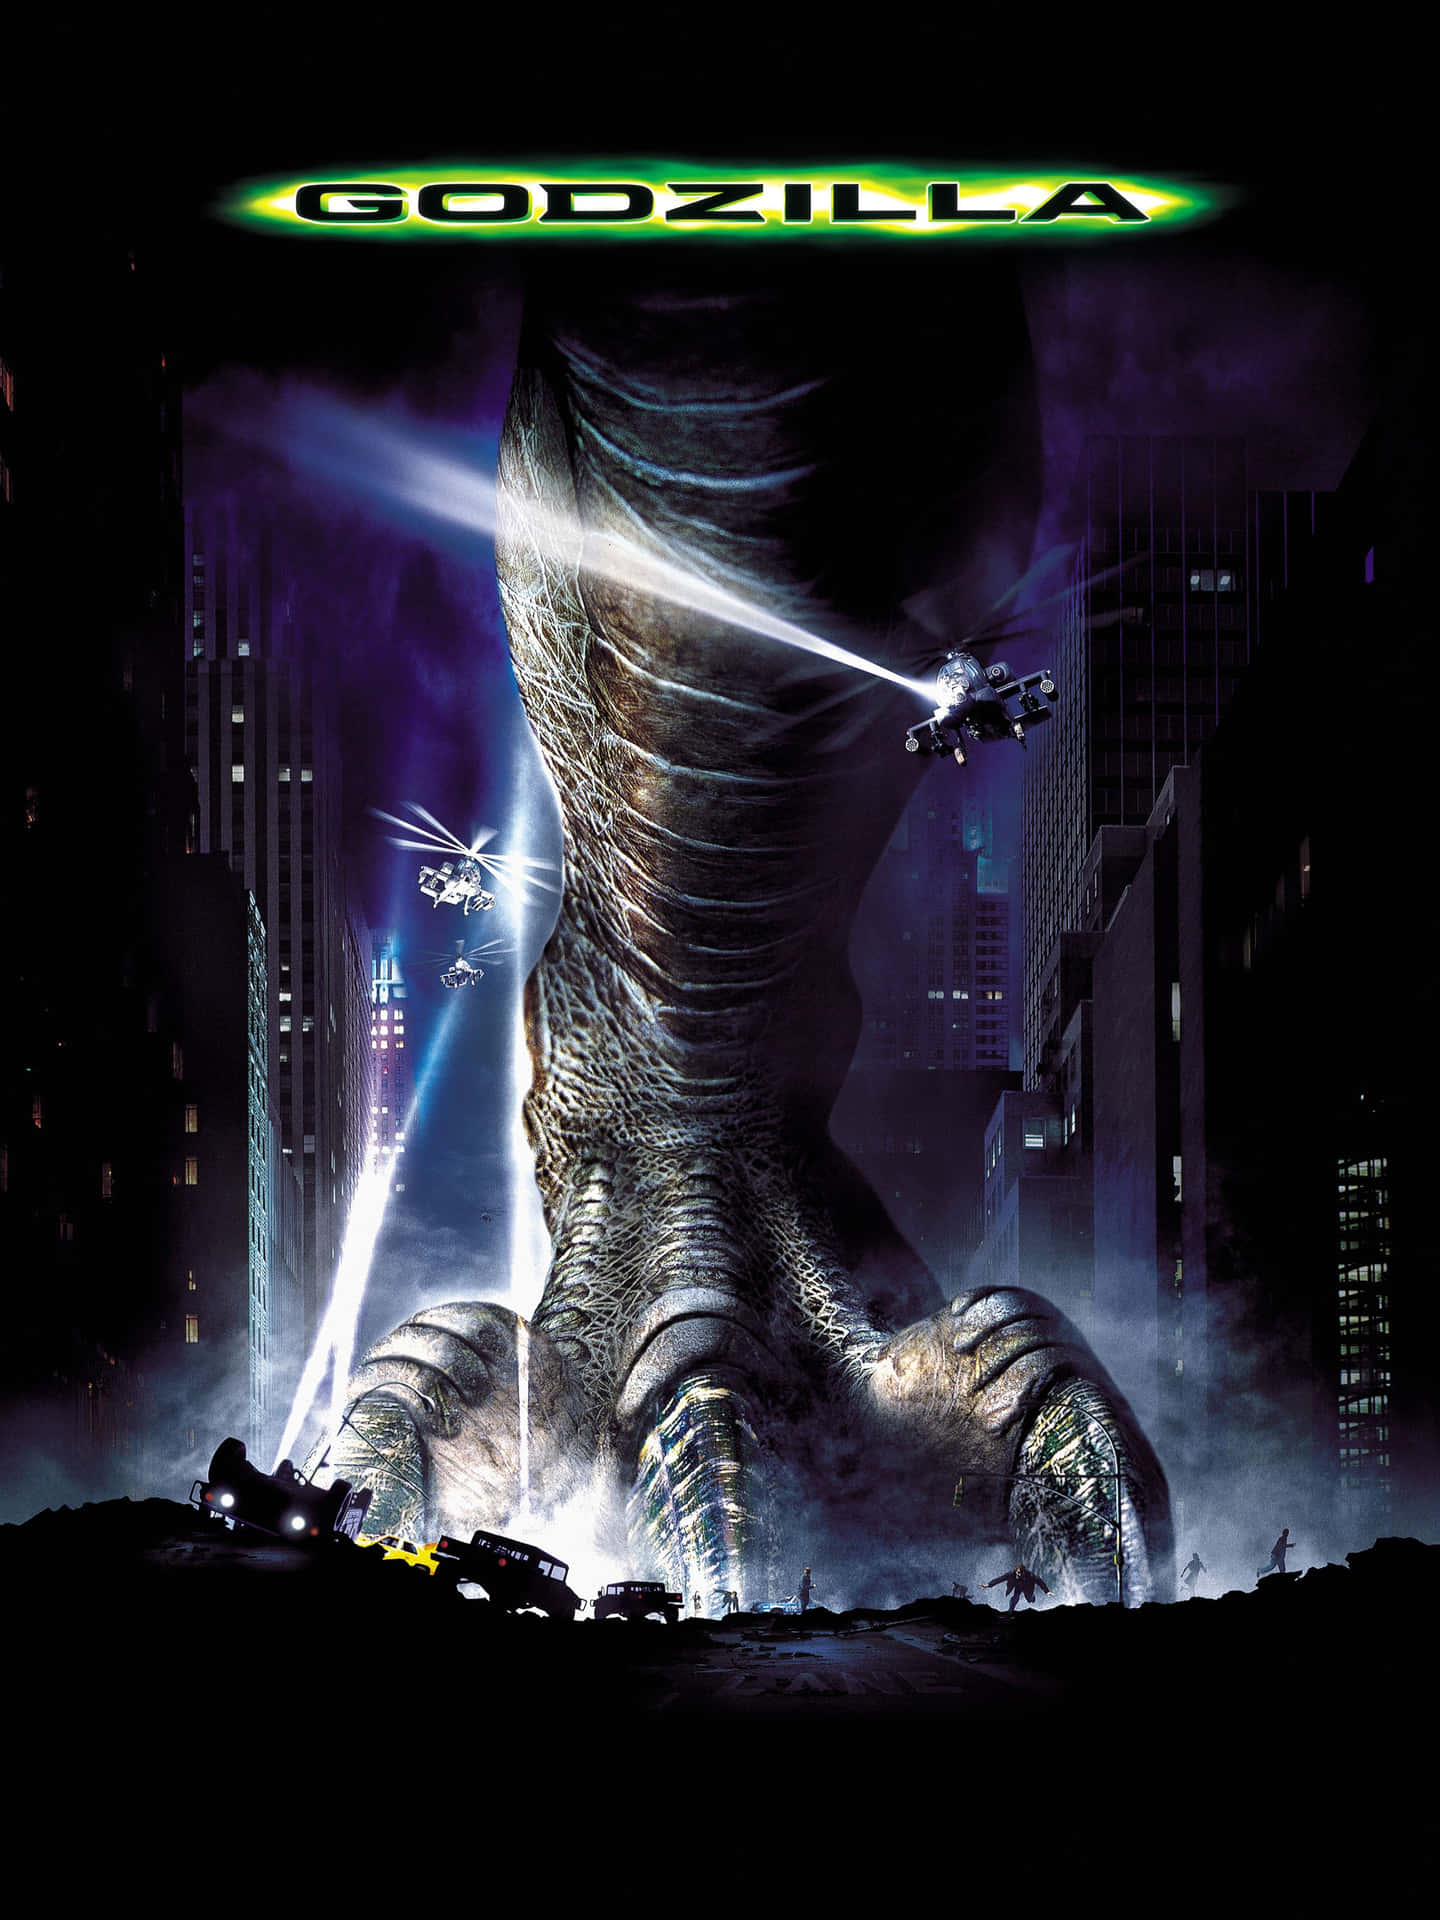 Godzilla Stands Tall in the 1998 Film Wallpaper